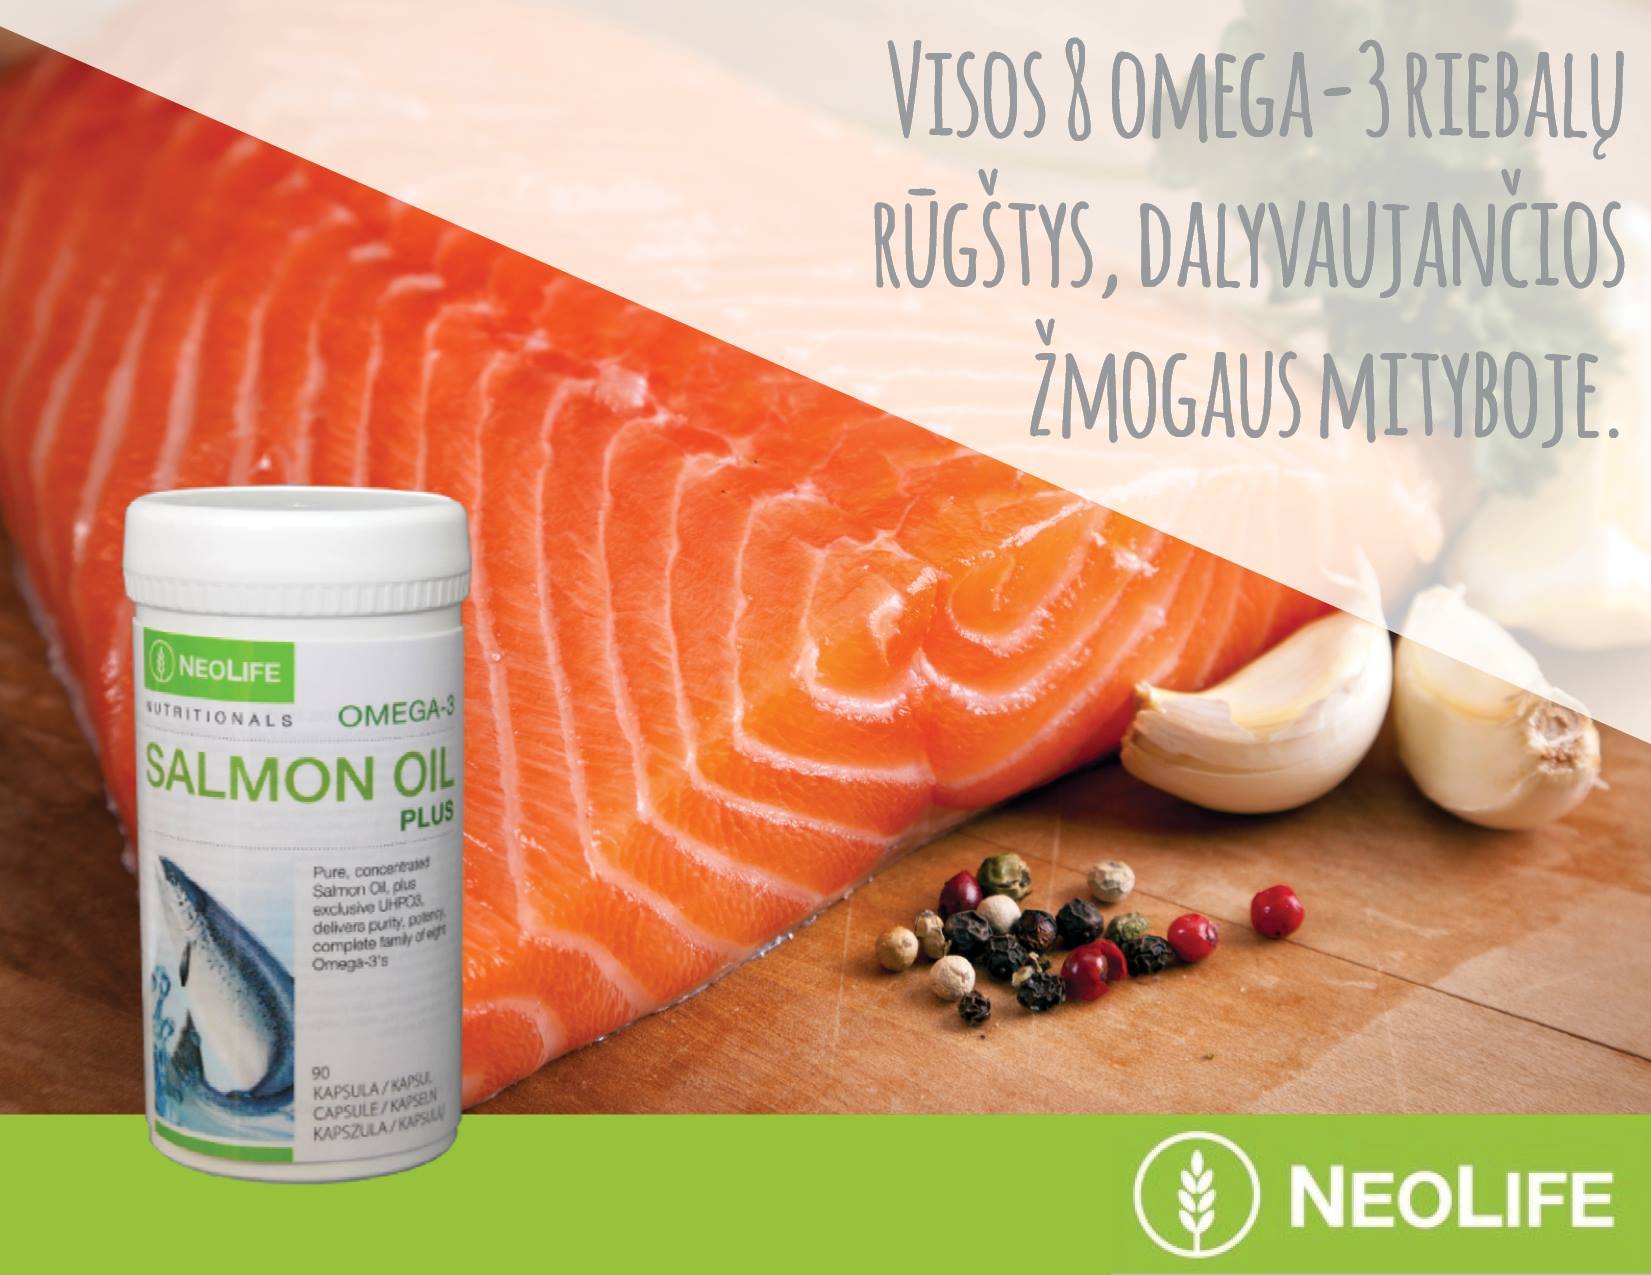 omega 3 riebalų rūgštys širdies sveikatai